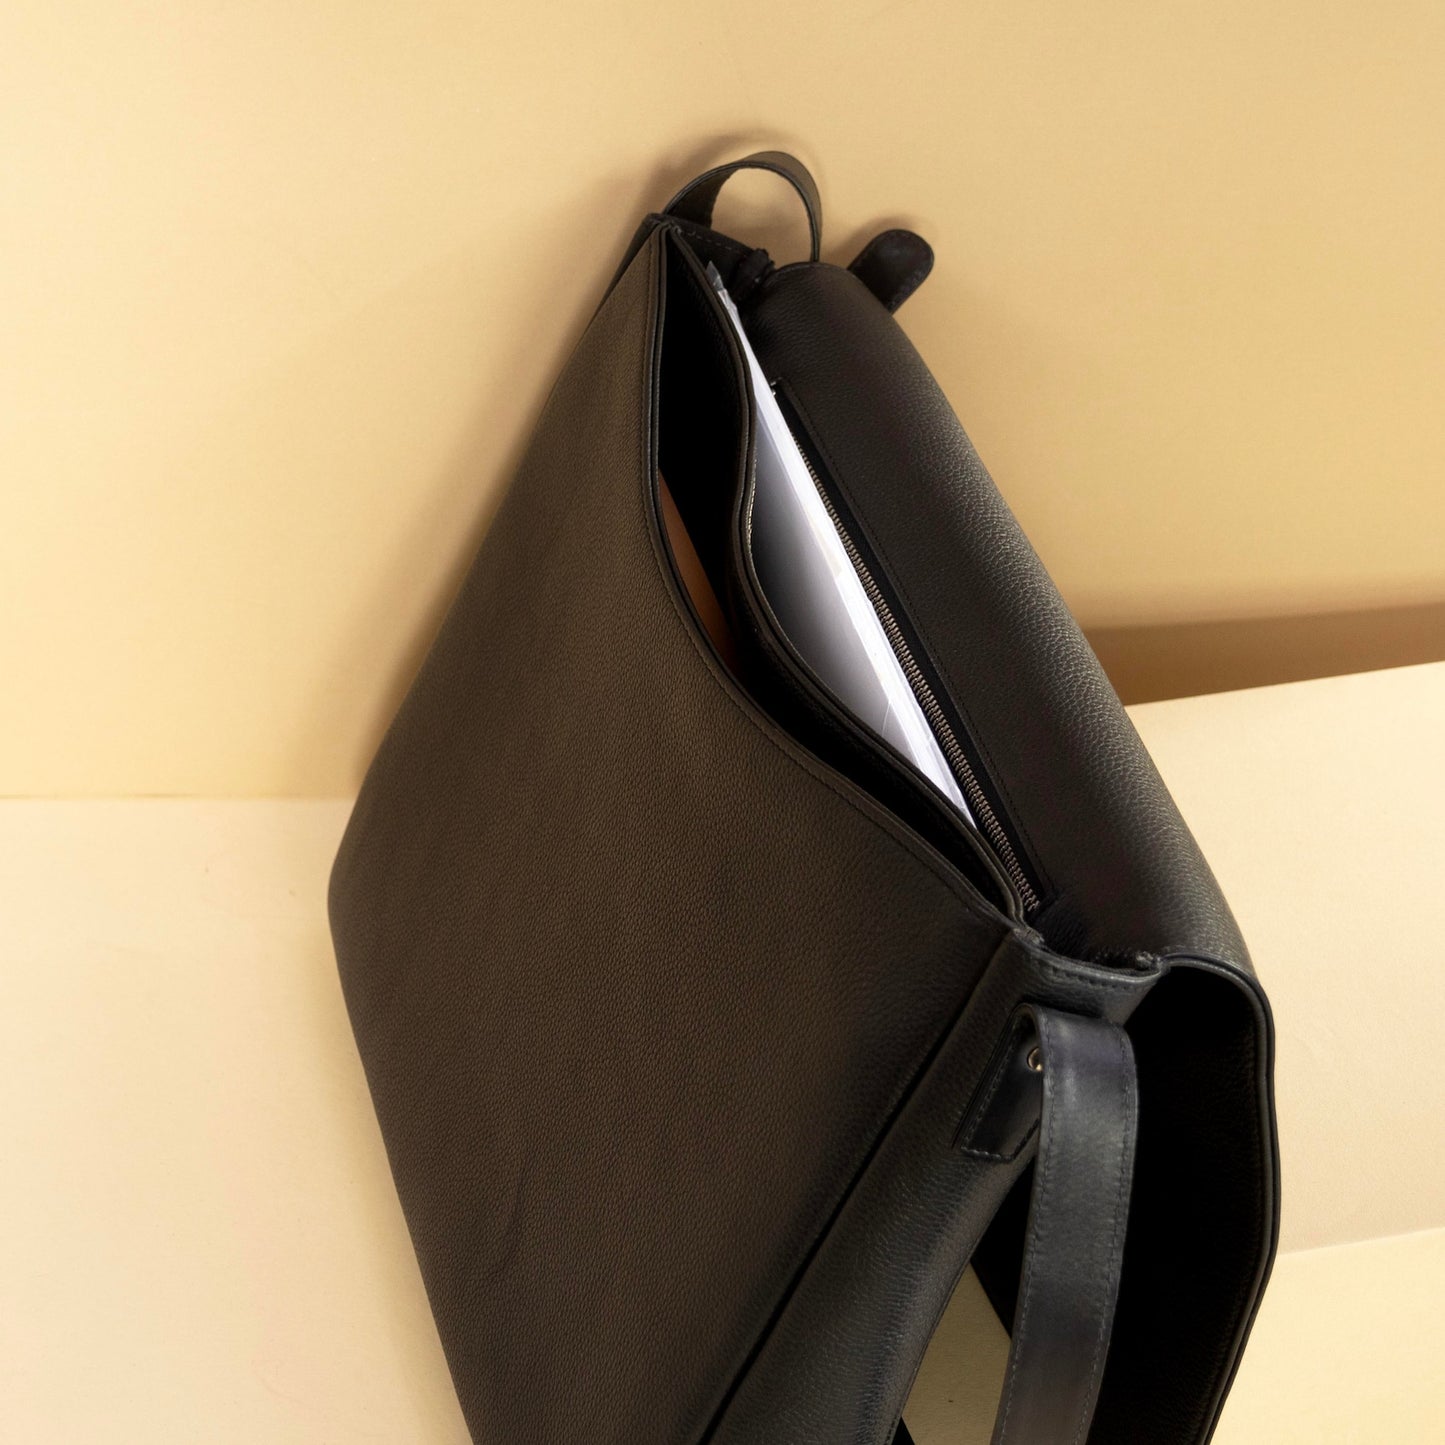 Genuine Leather Messenger Bag With Adjustable Strap